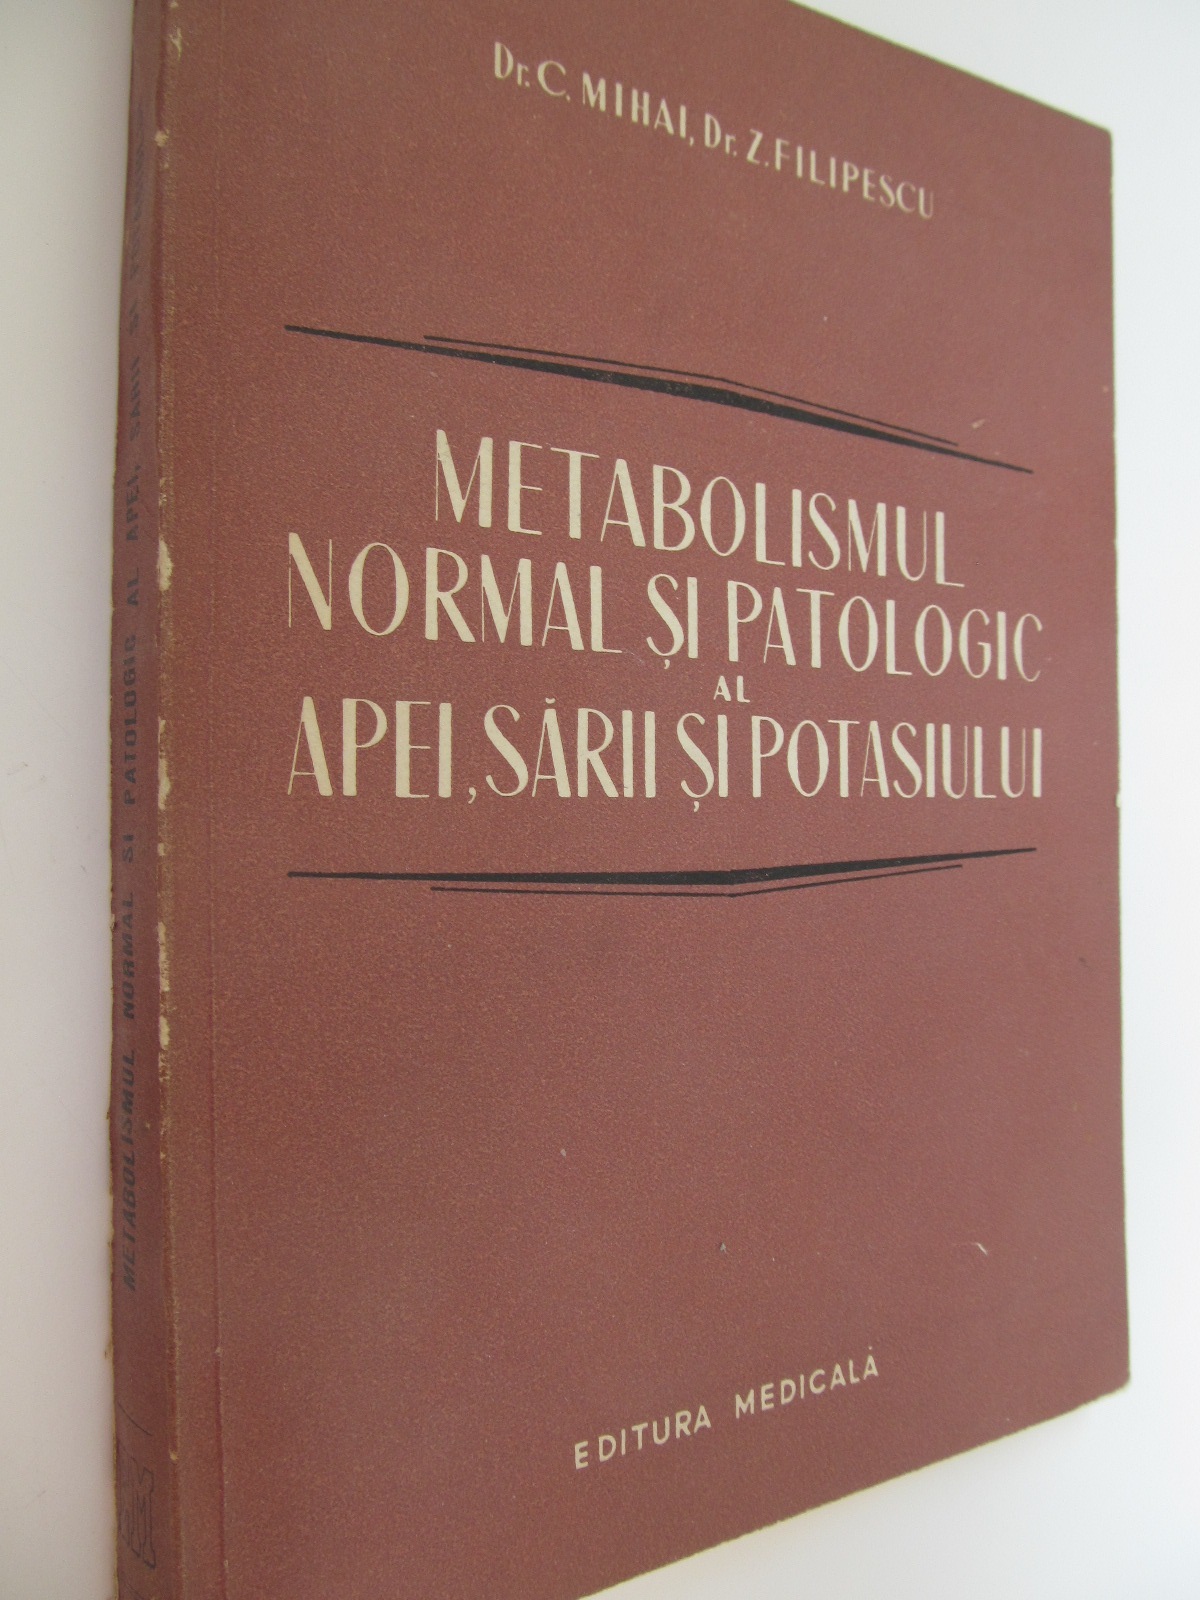 Metabolismul normal si patologic al apei, sarii si potasiului - C. Mihai, Z. Filipescu | Detalii carte